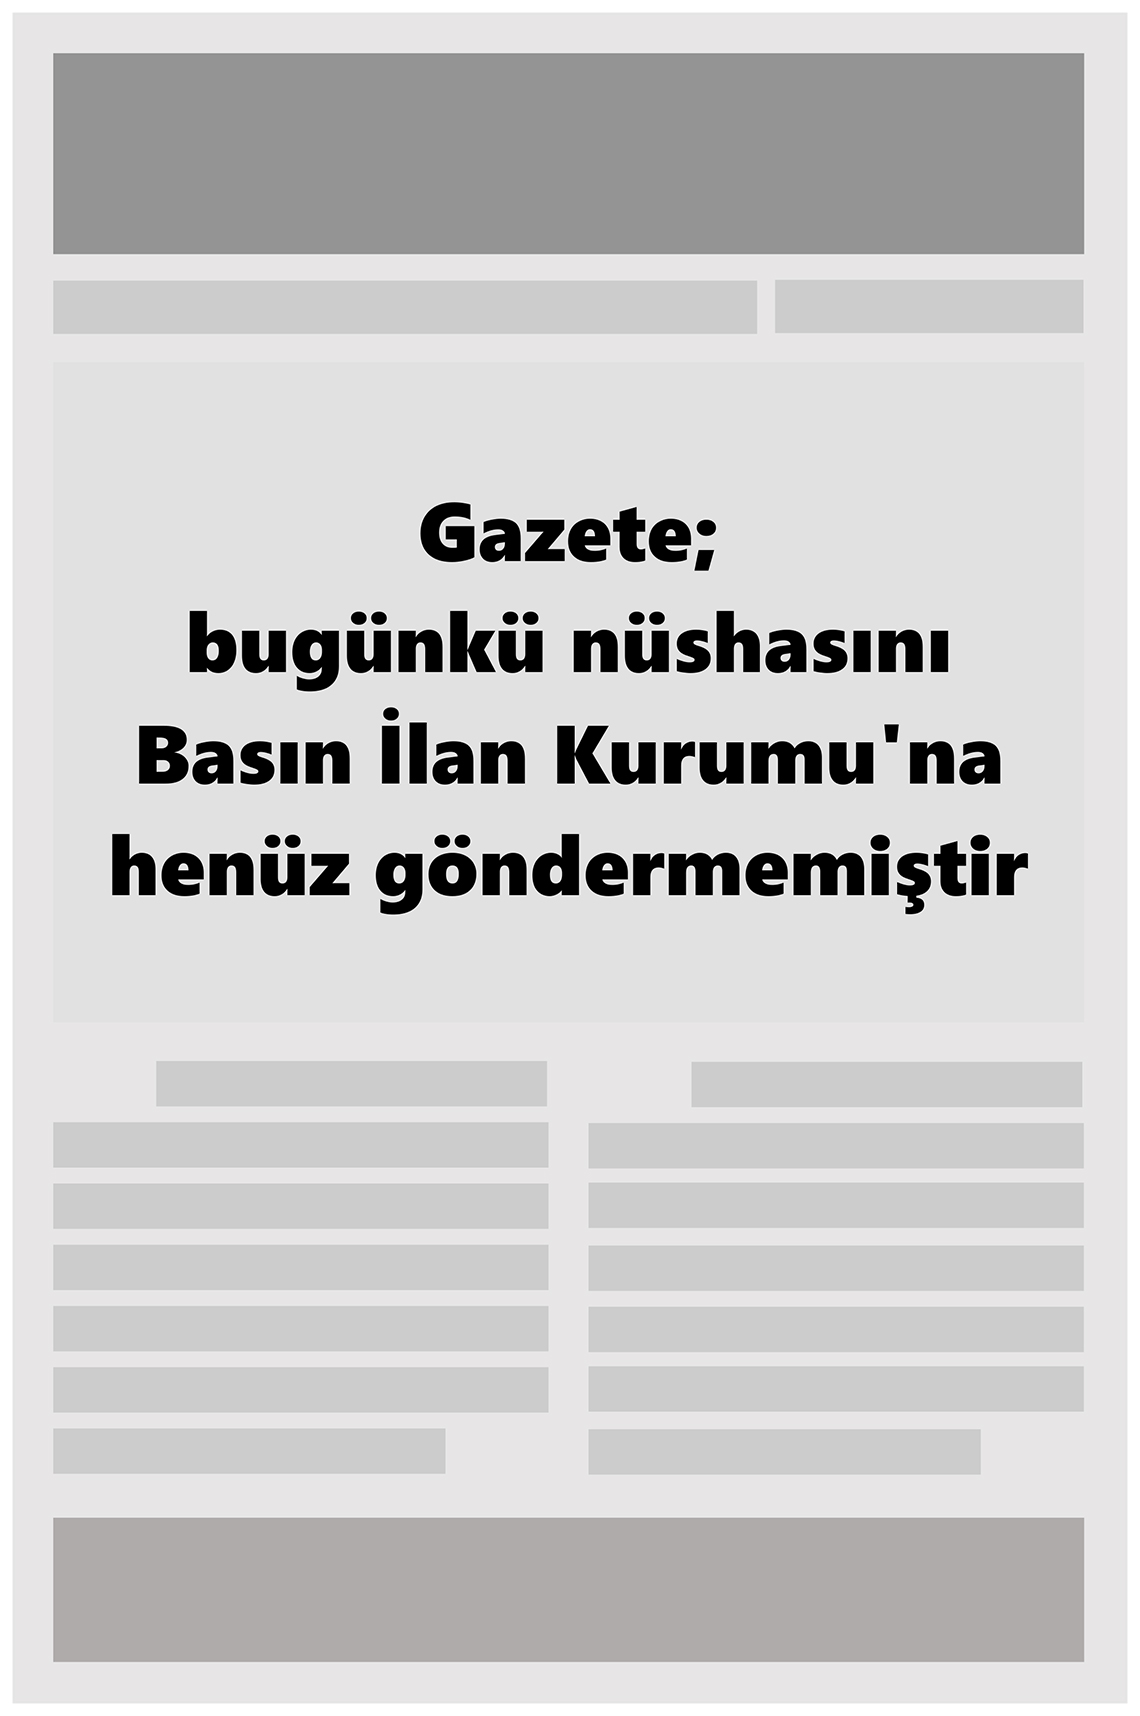 Büyükşehir Merhaba GAzetesi Gazete Manşeti